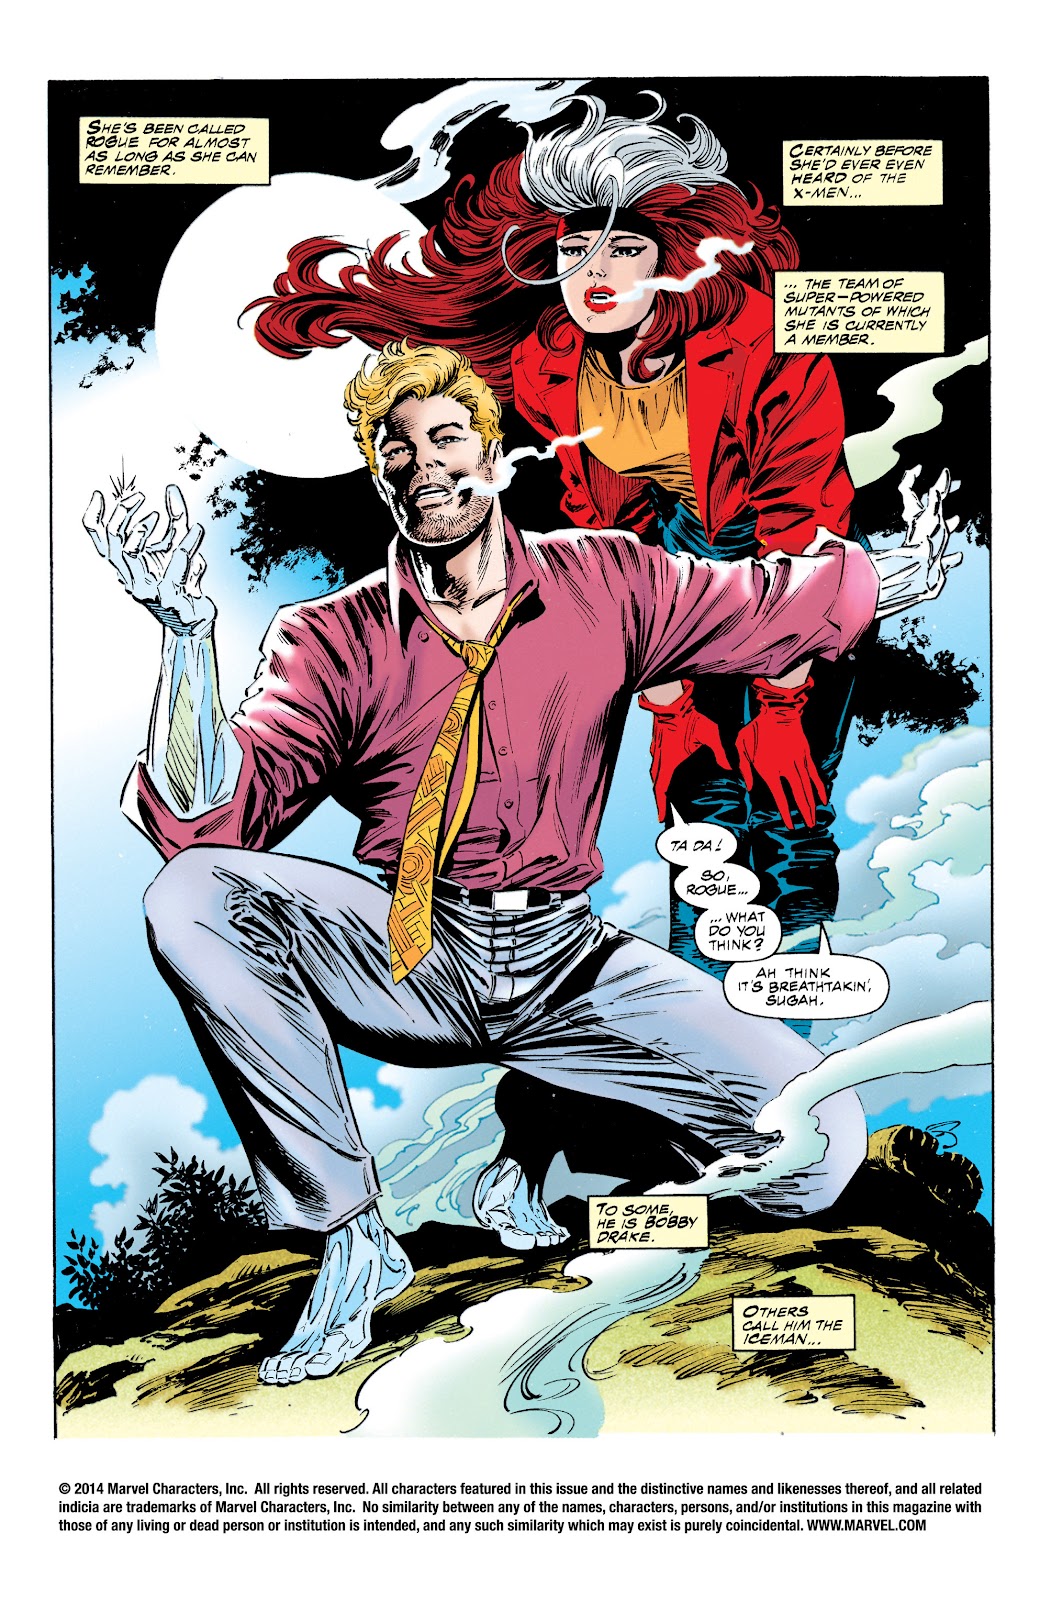 USA, 1994 Uncanny X-Men # 319 